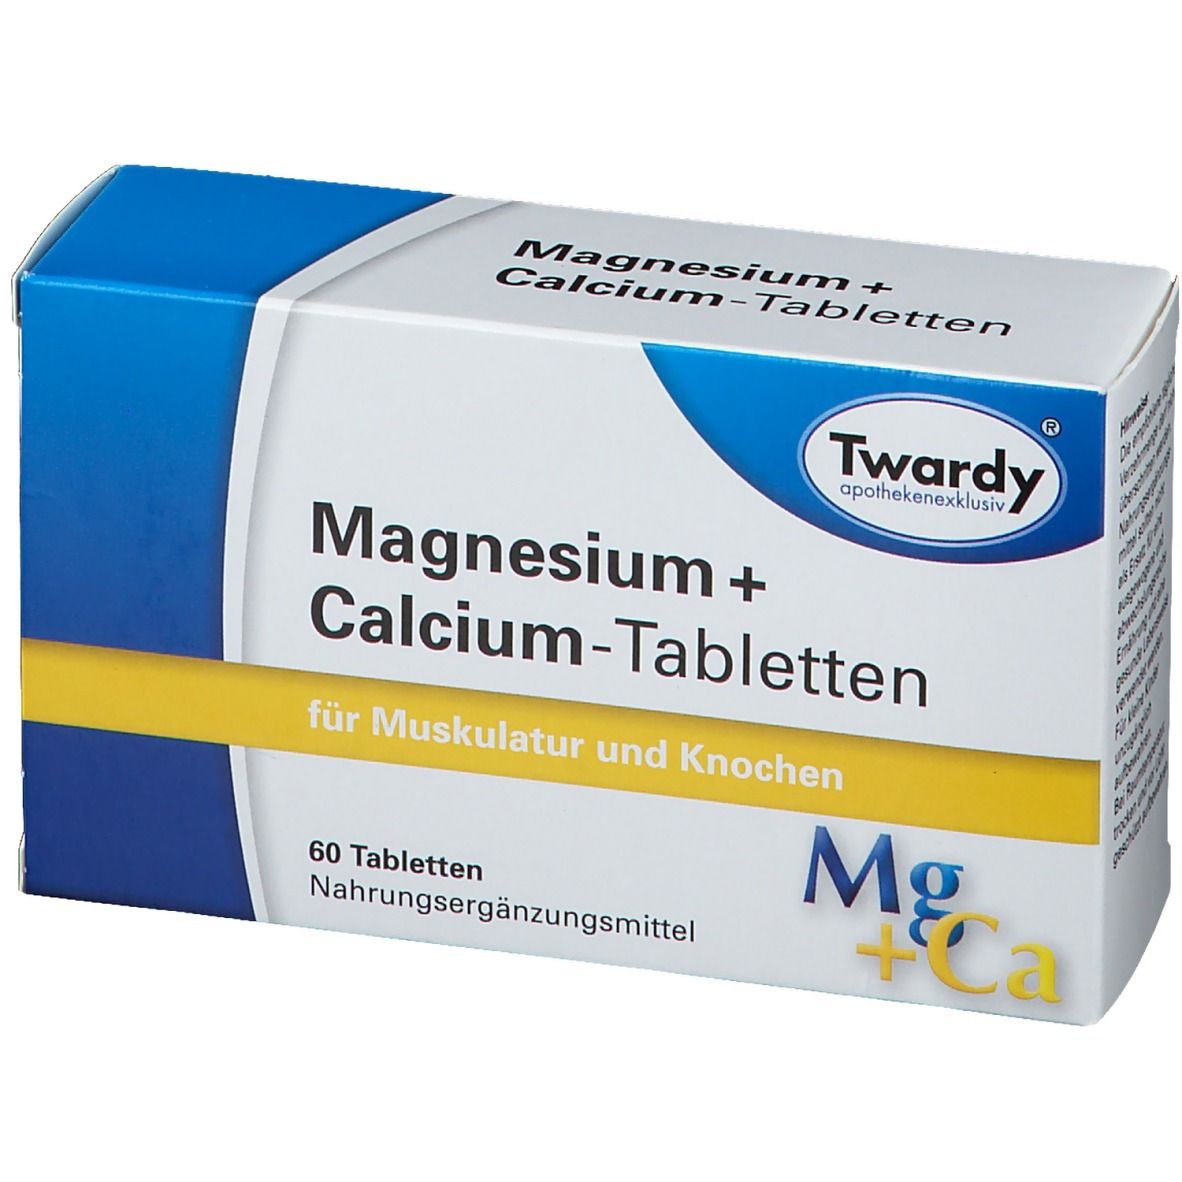 Twardy® Magnesium + Calcium